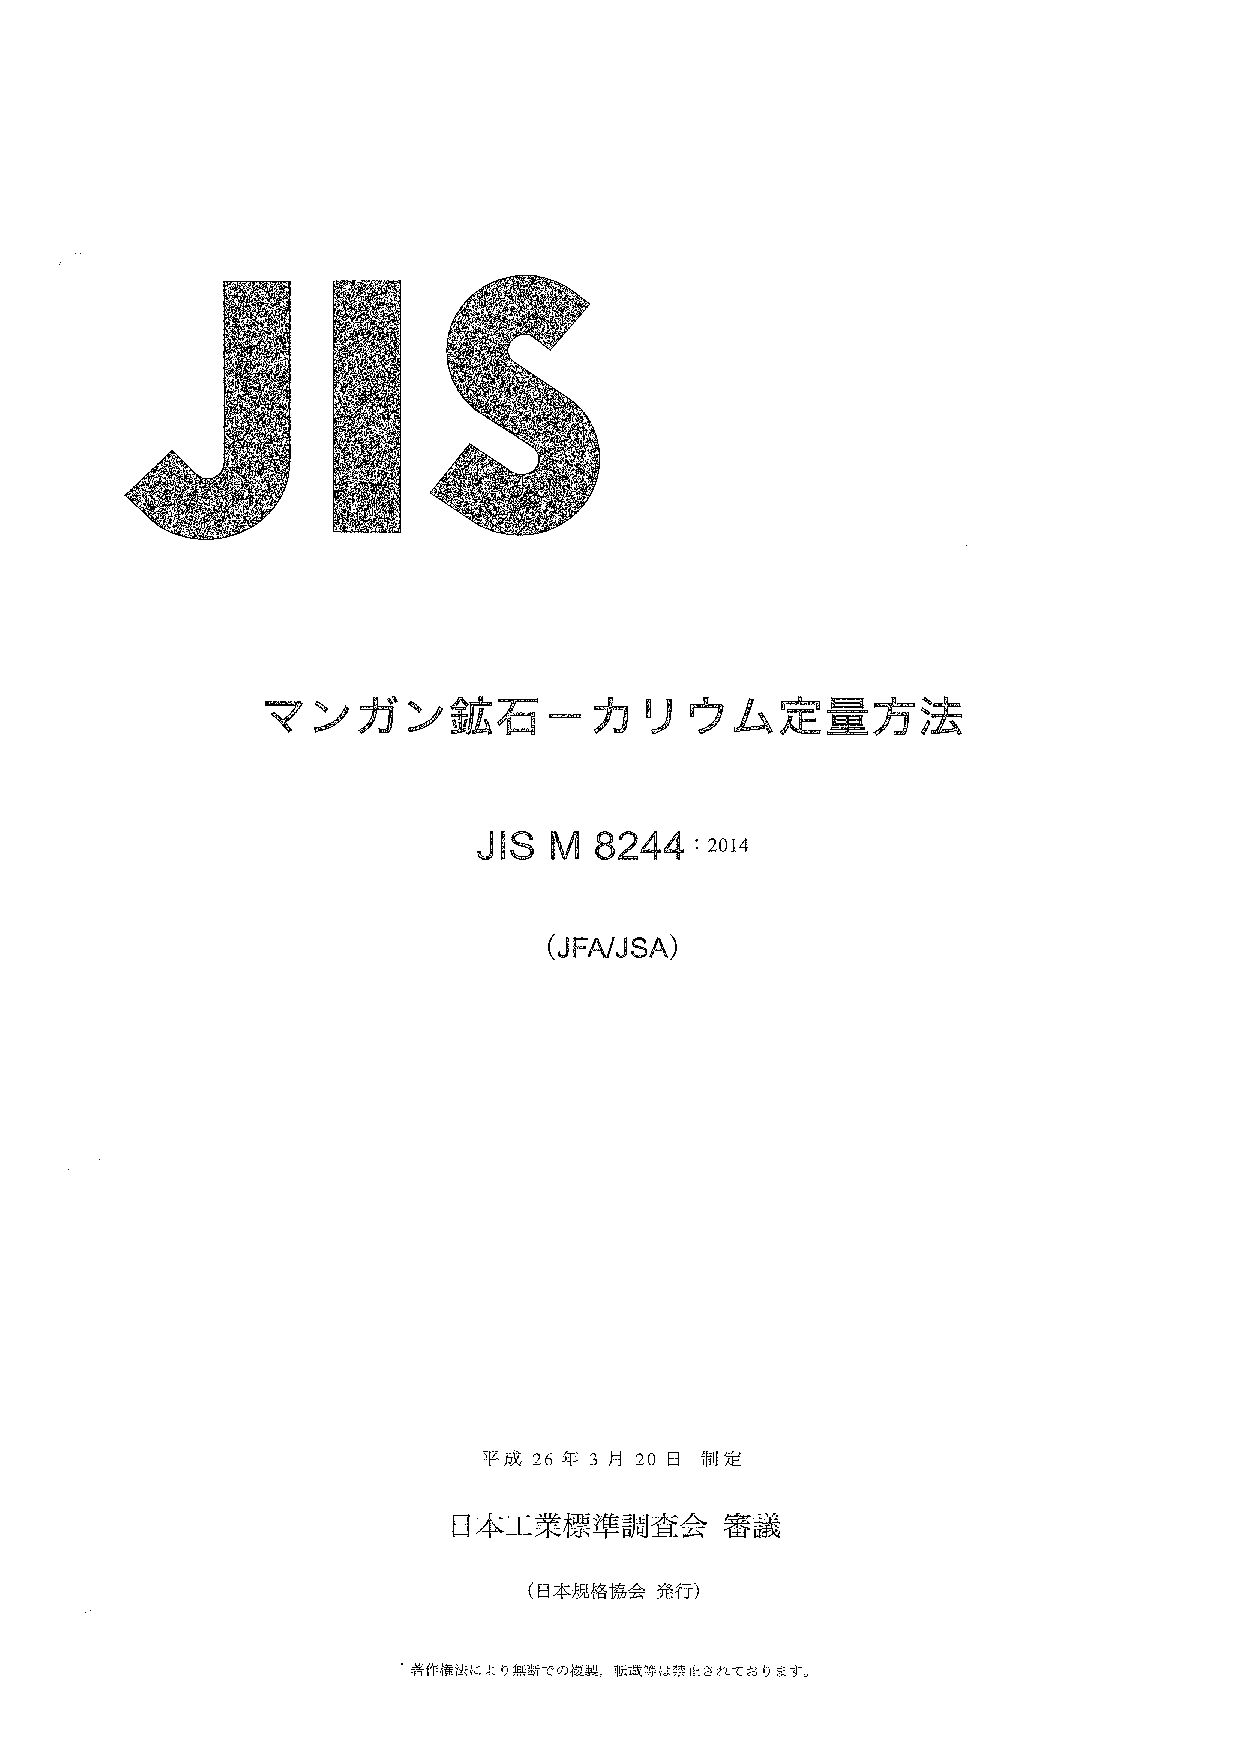 JIS M 8244:2014封面图